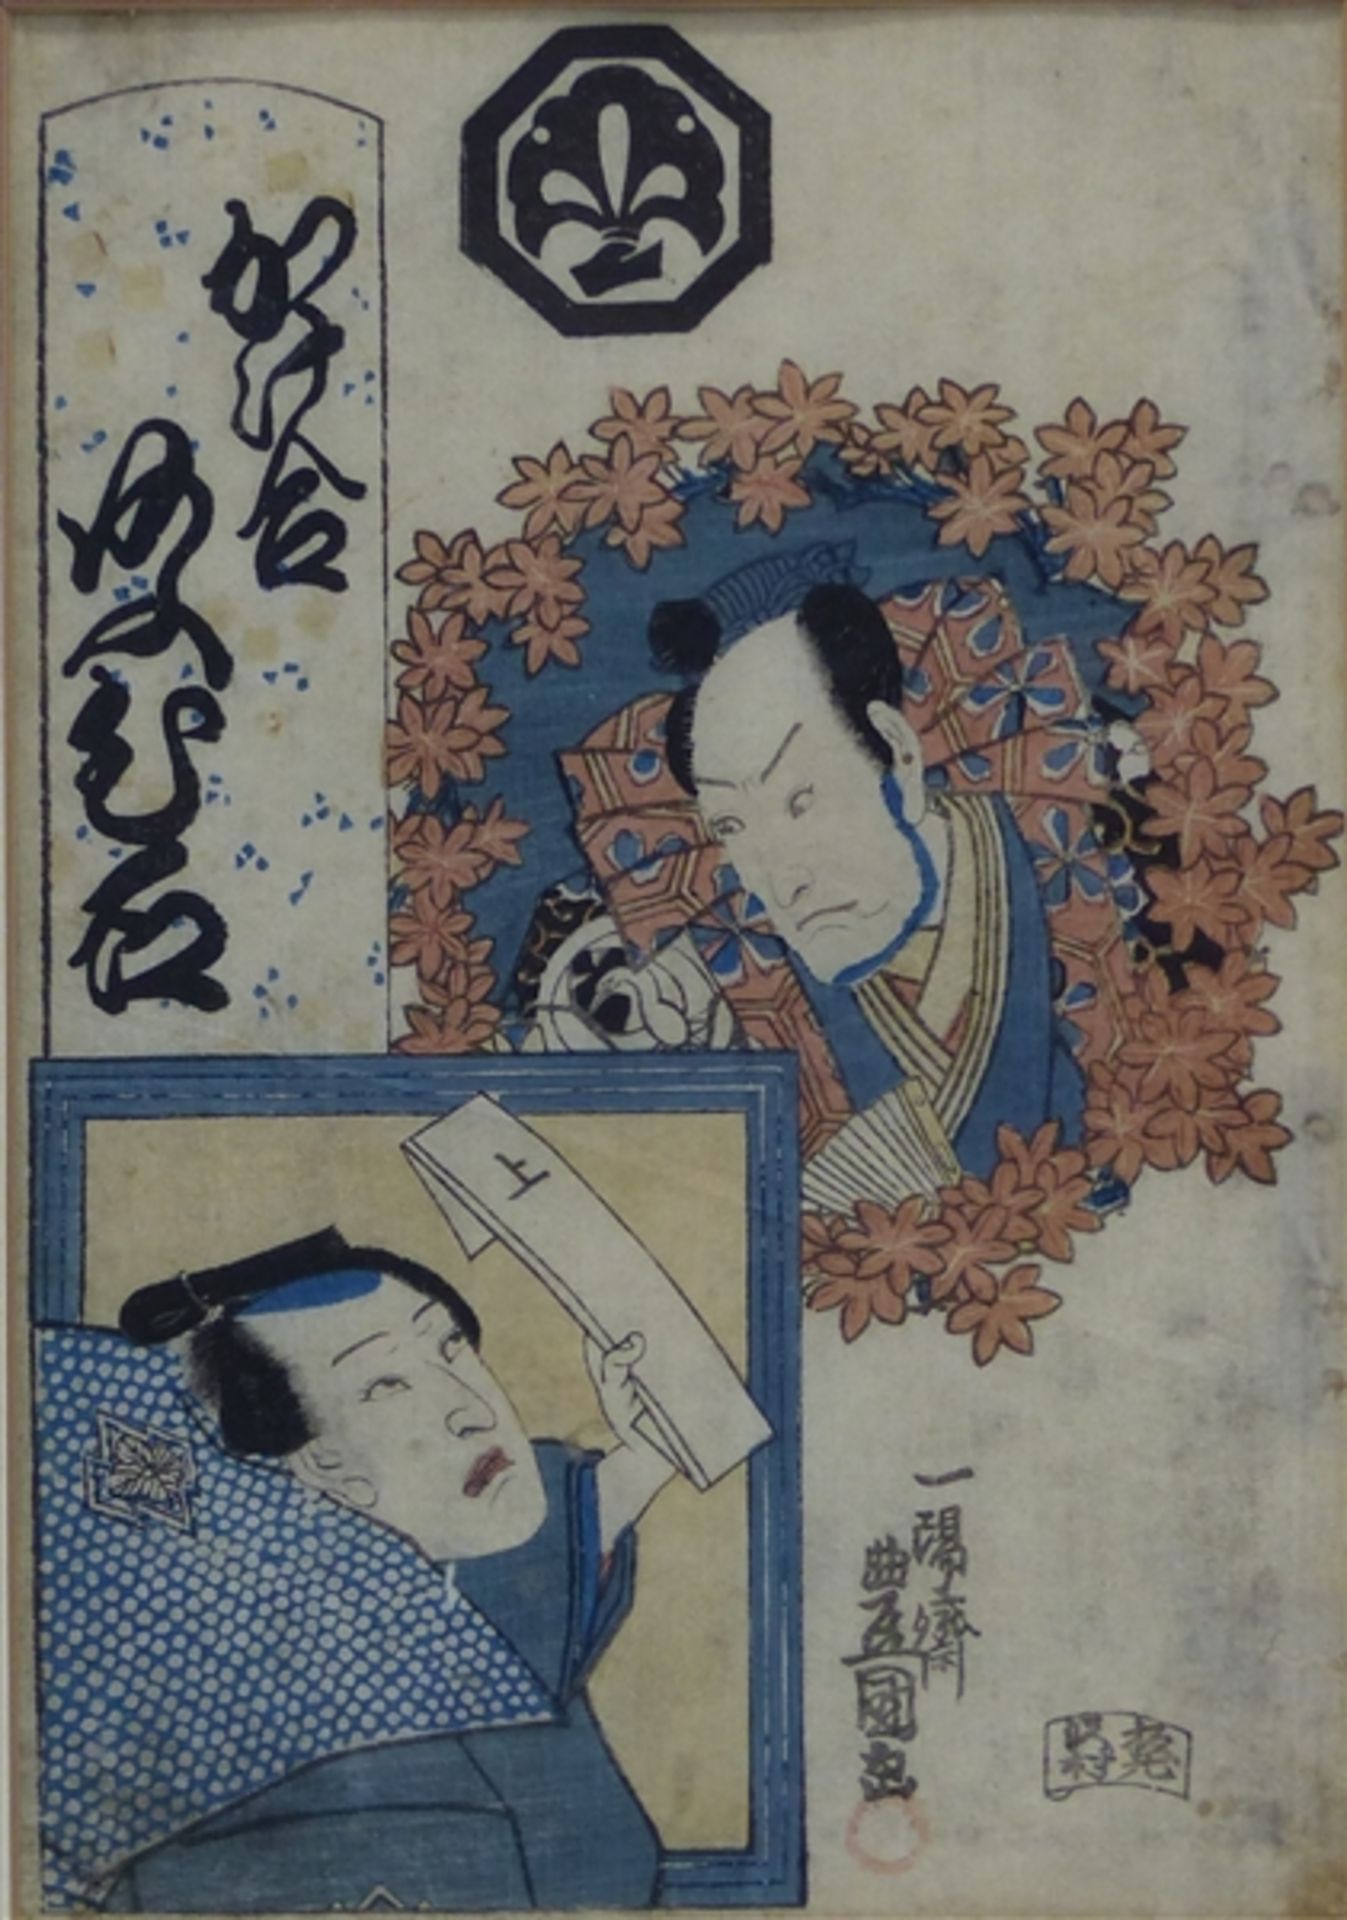 Farbholzschnitt Japan, 19. Jh., Frau und Mann mit Brief, verschiedene Schriftzeichen, 22x15 cm, im